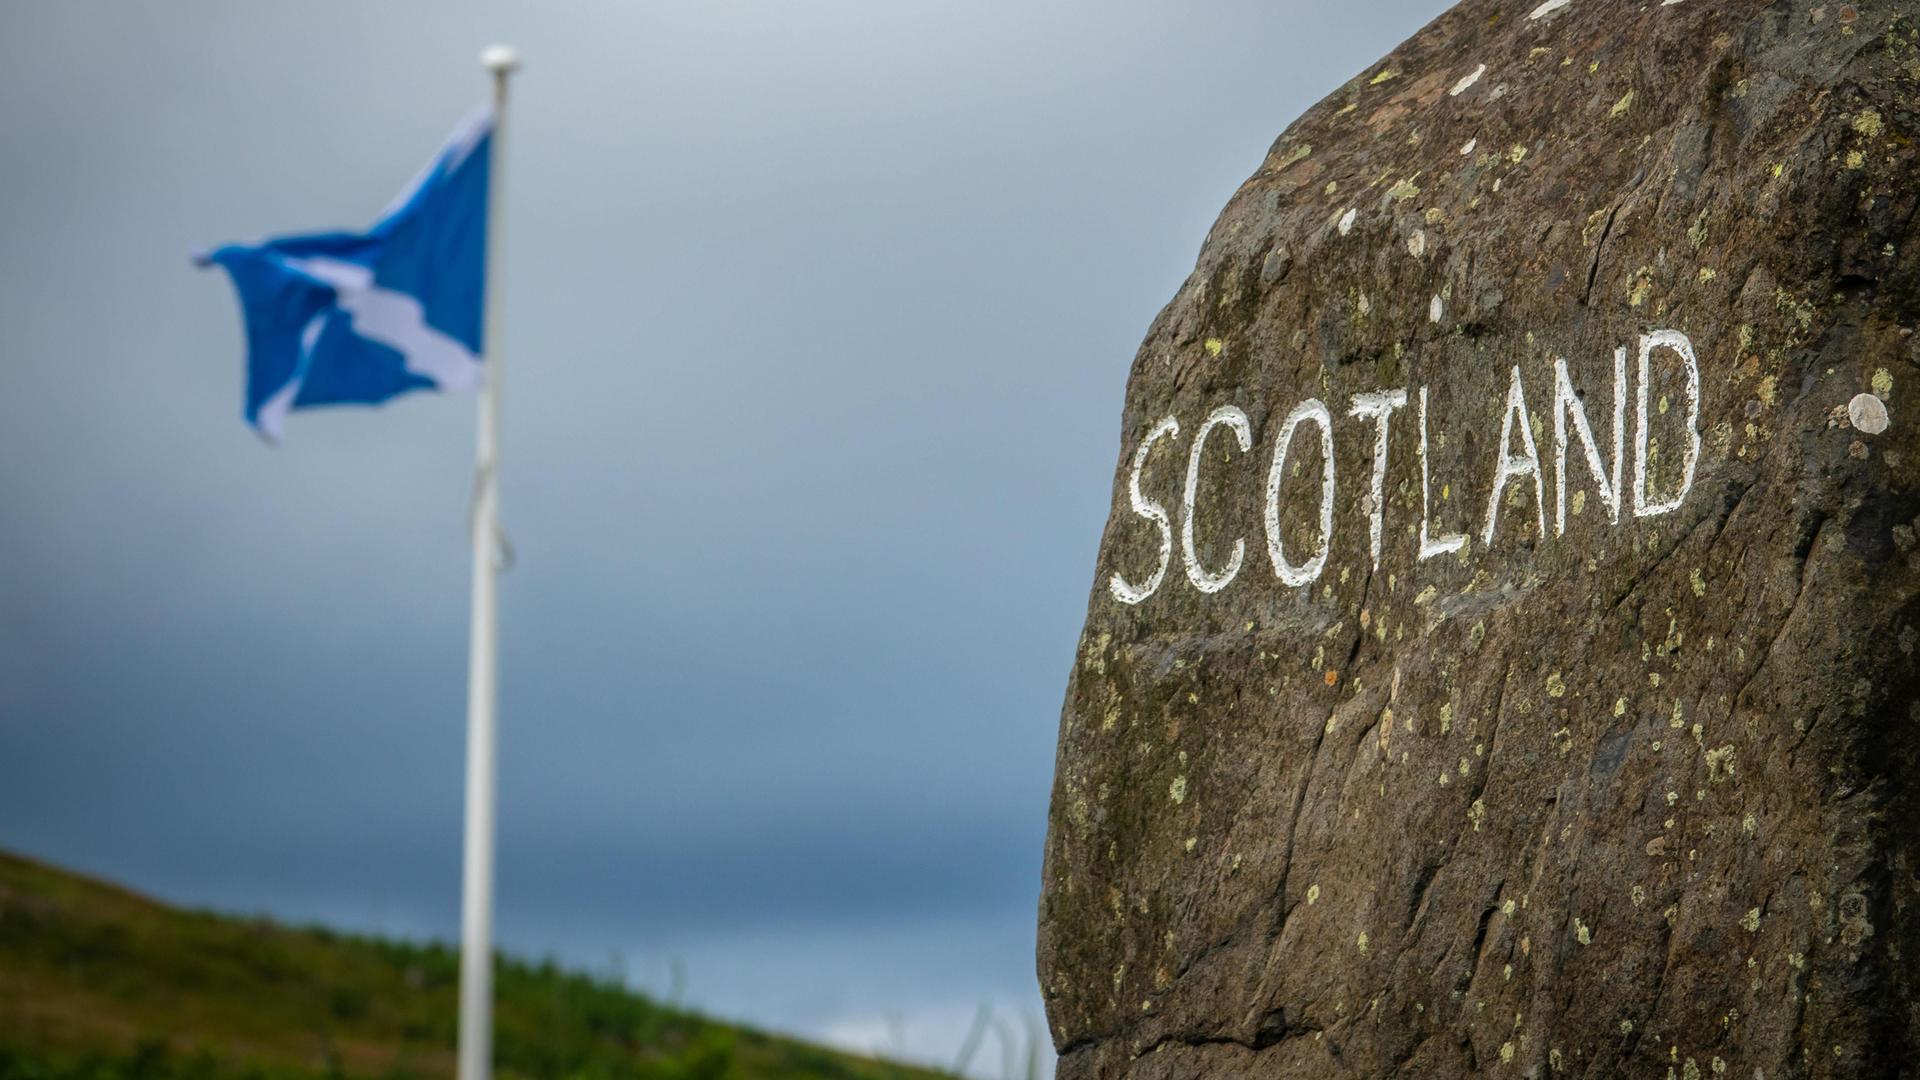 Auf einem Stein steht mit weißer Farbe geschrieben "Scotland". Dahinter weht eine schottische Fahne.